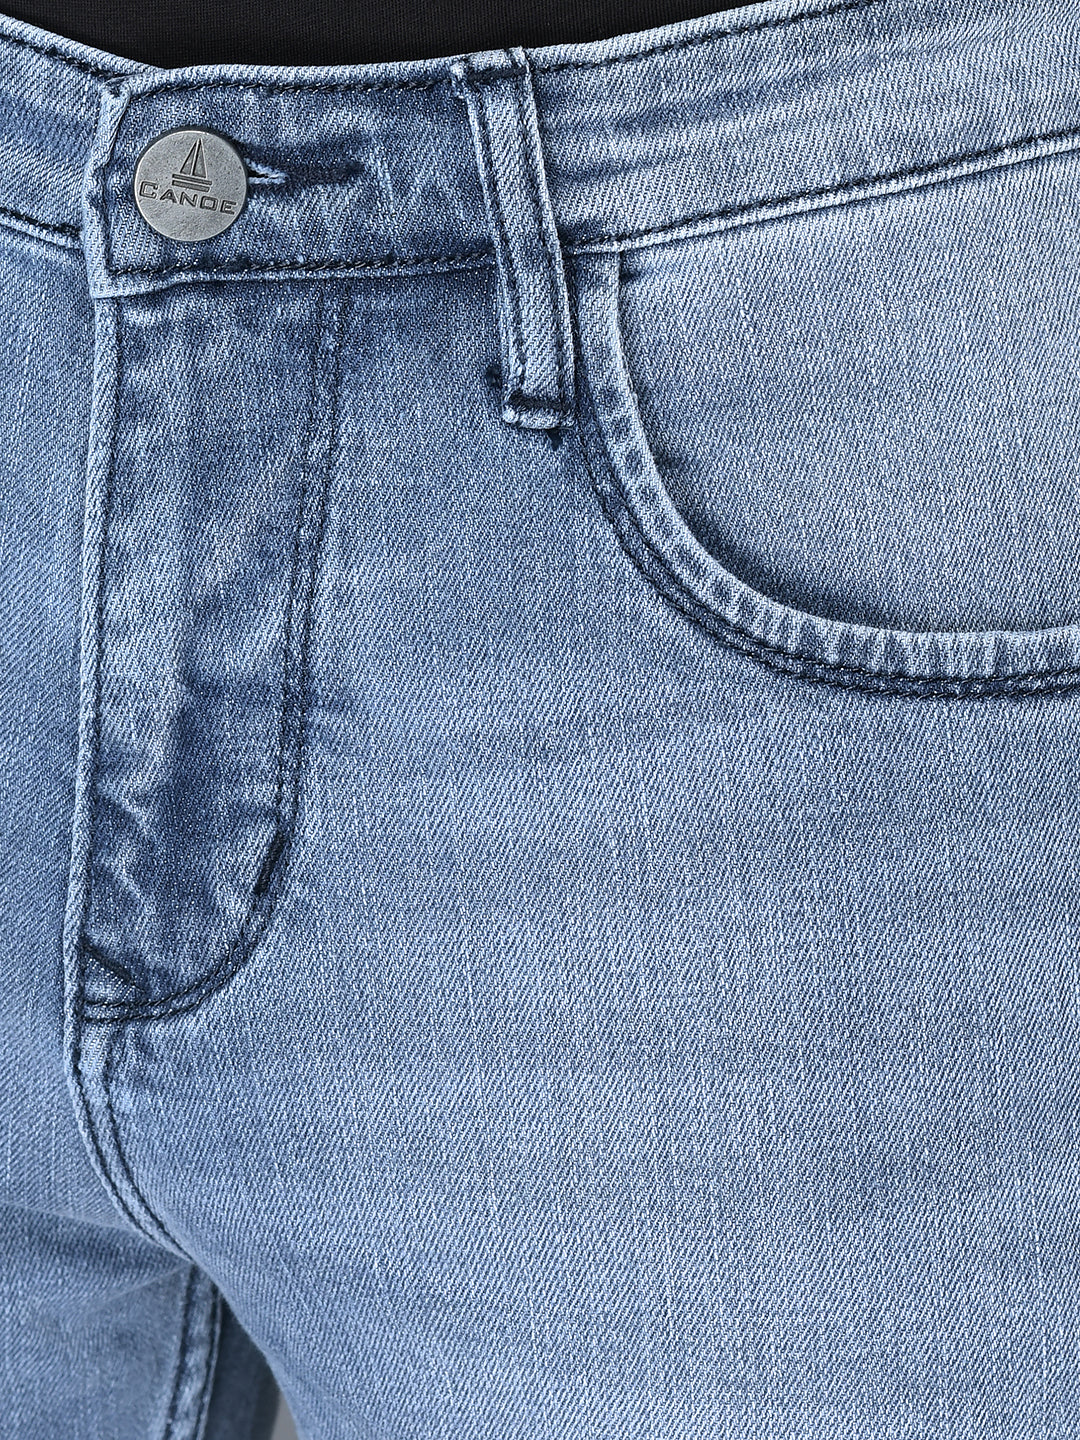 CANOE MEN Denim Trouser  POWDER BLUE Color